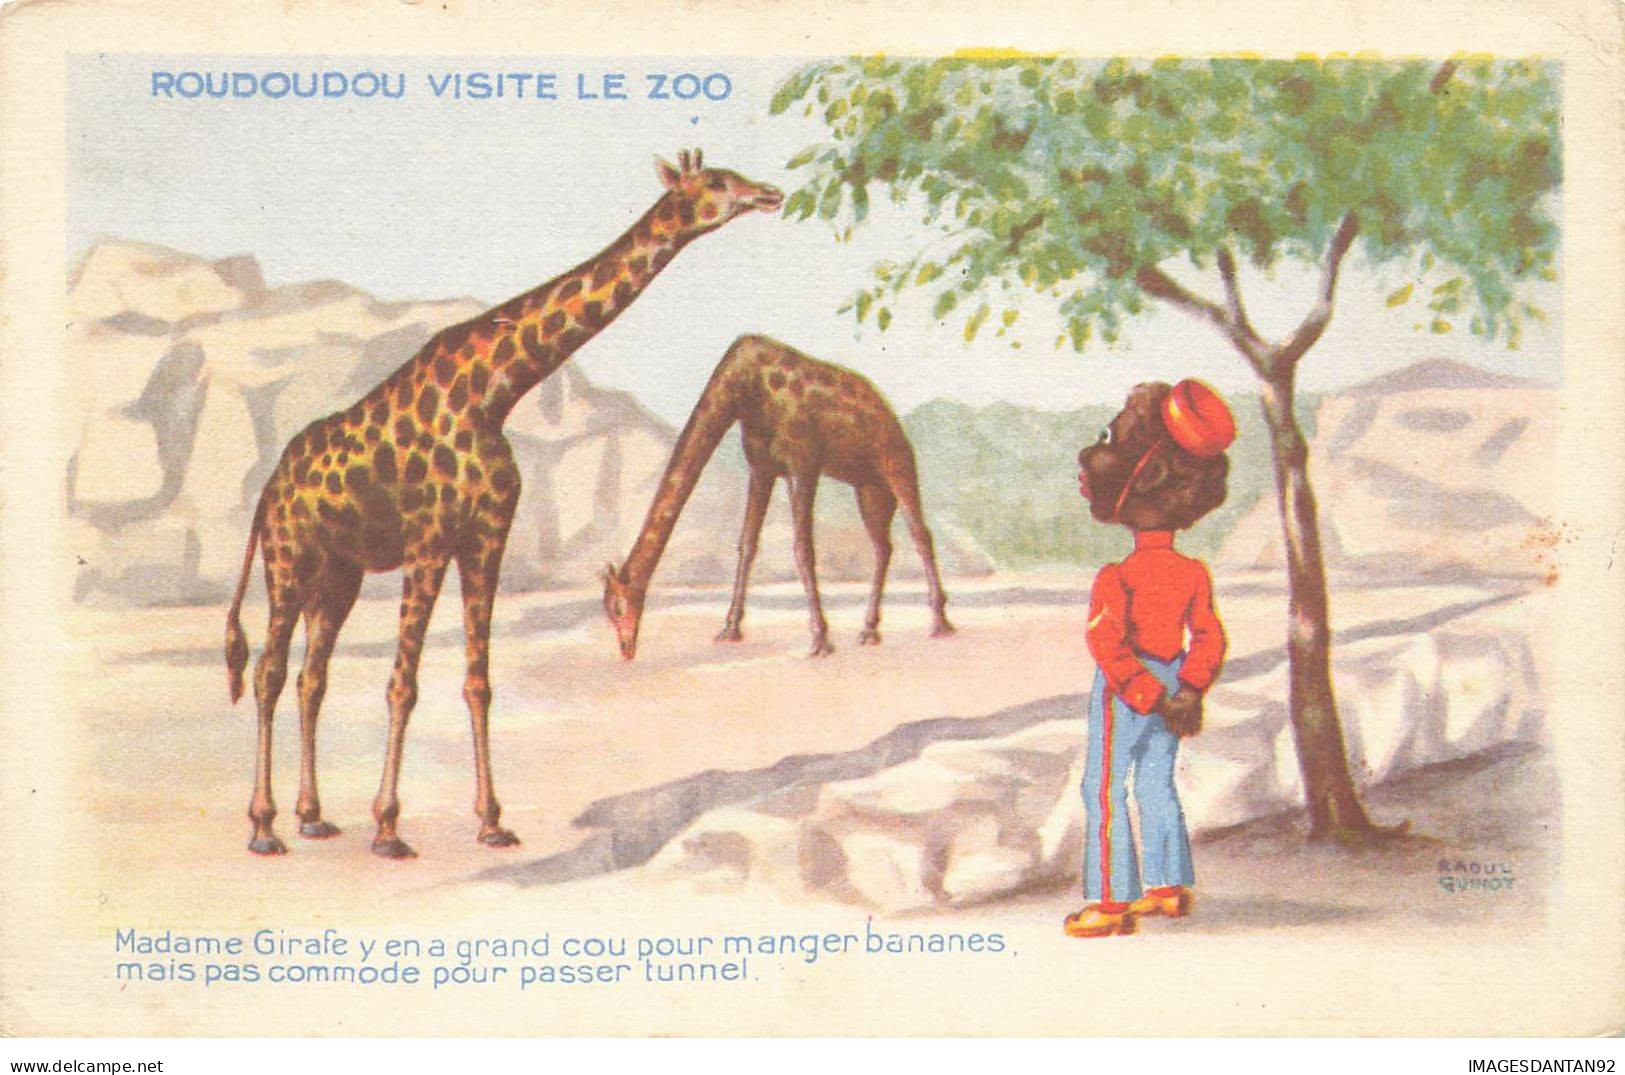 ANIMAUX #SAN47240 GIRAFES ROUDOUDOU VISITE LE ZOO MADAME GIRAFE A UN GRAND COU POUR MANGER DES BANANES - Girafes